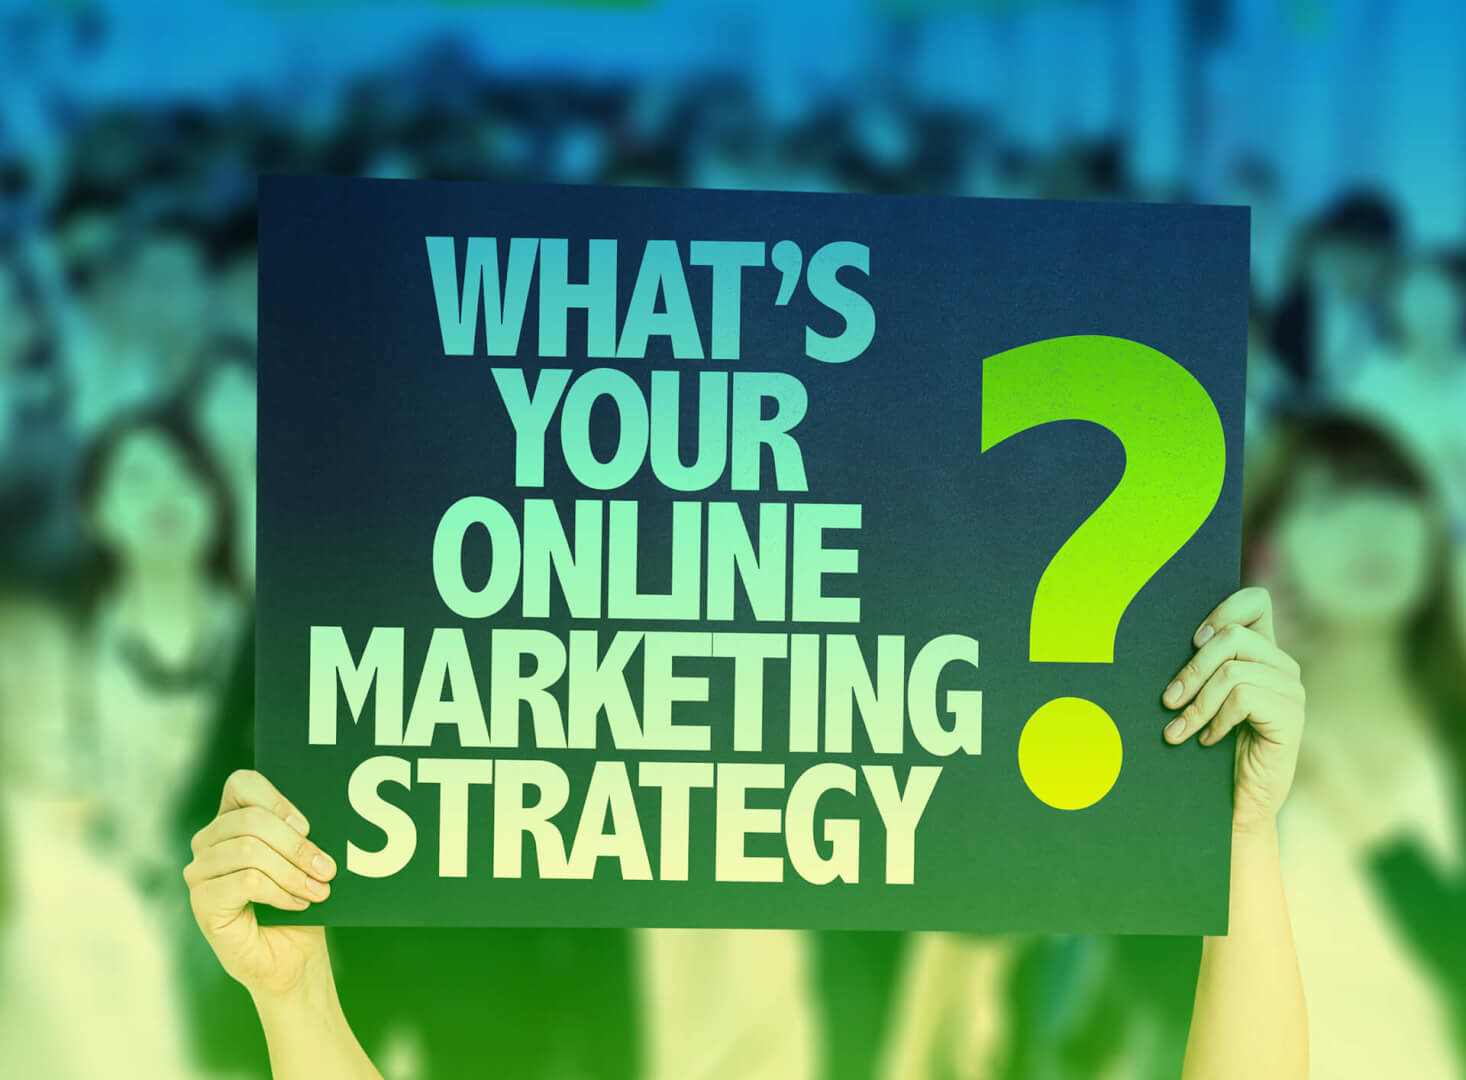 Strategisches Online-Marketing